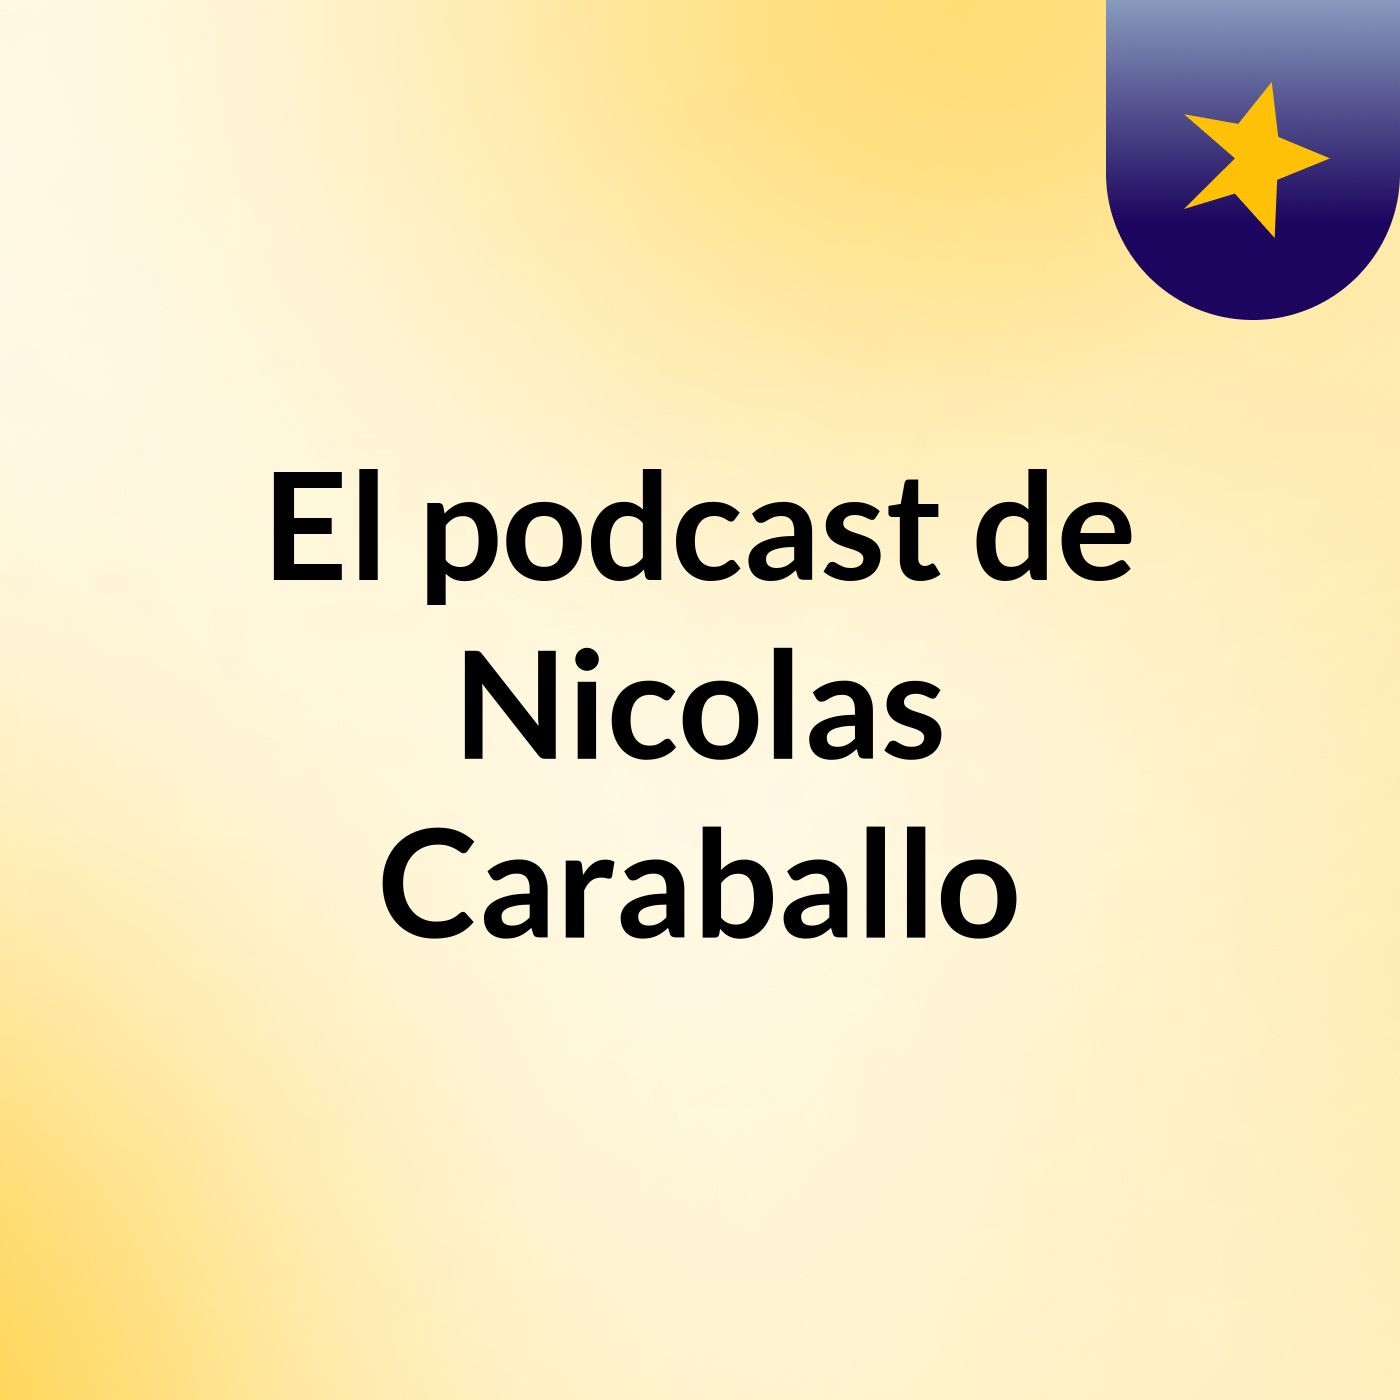 Episodio 19 - El podcast de Nicolas Caraballo